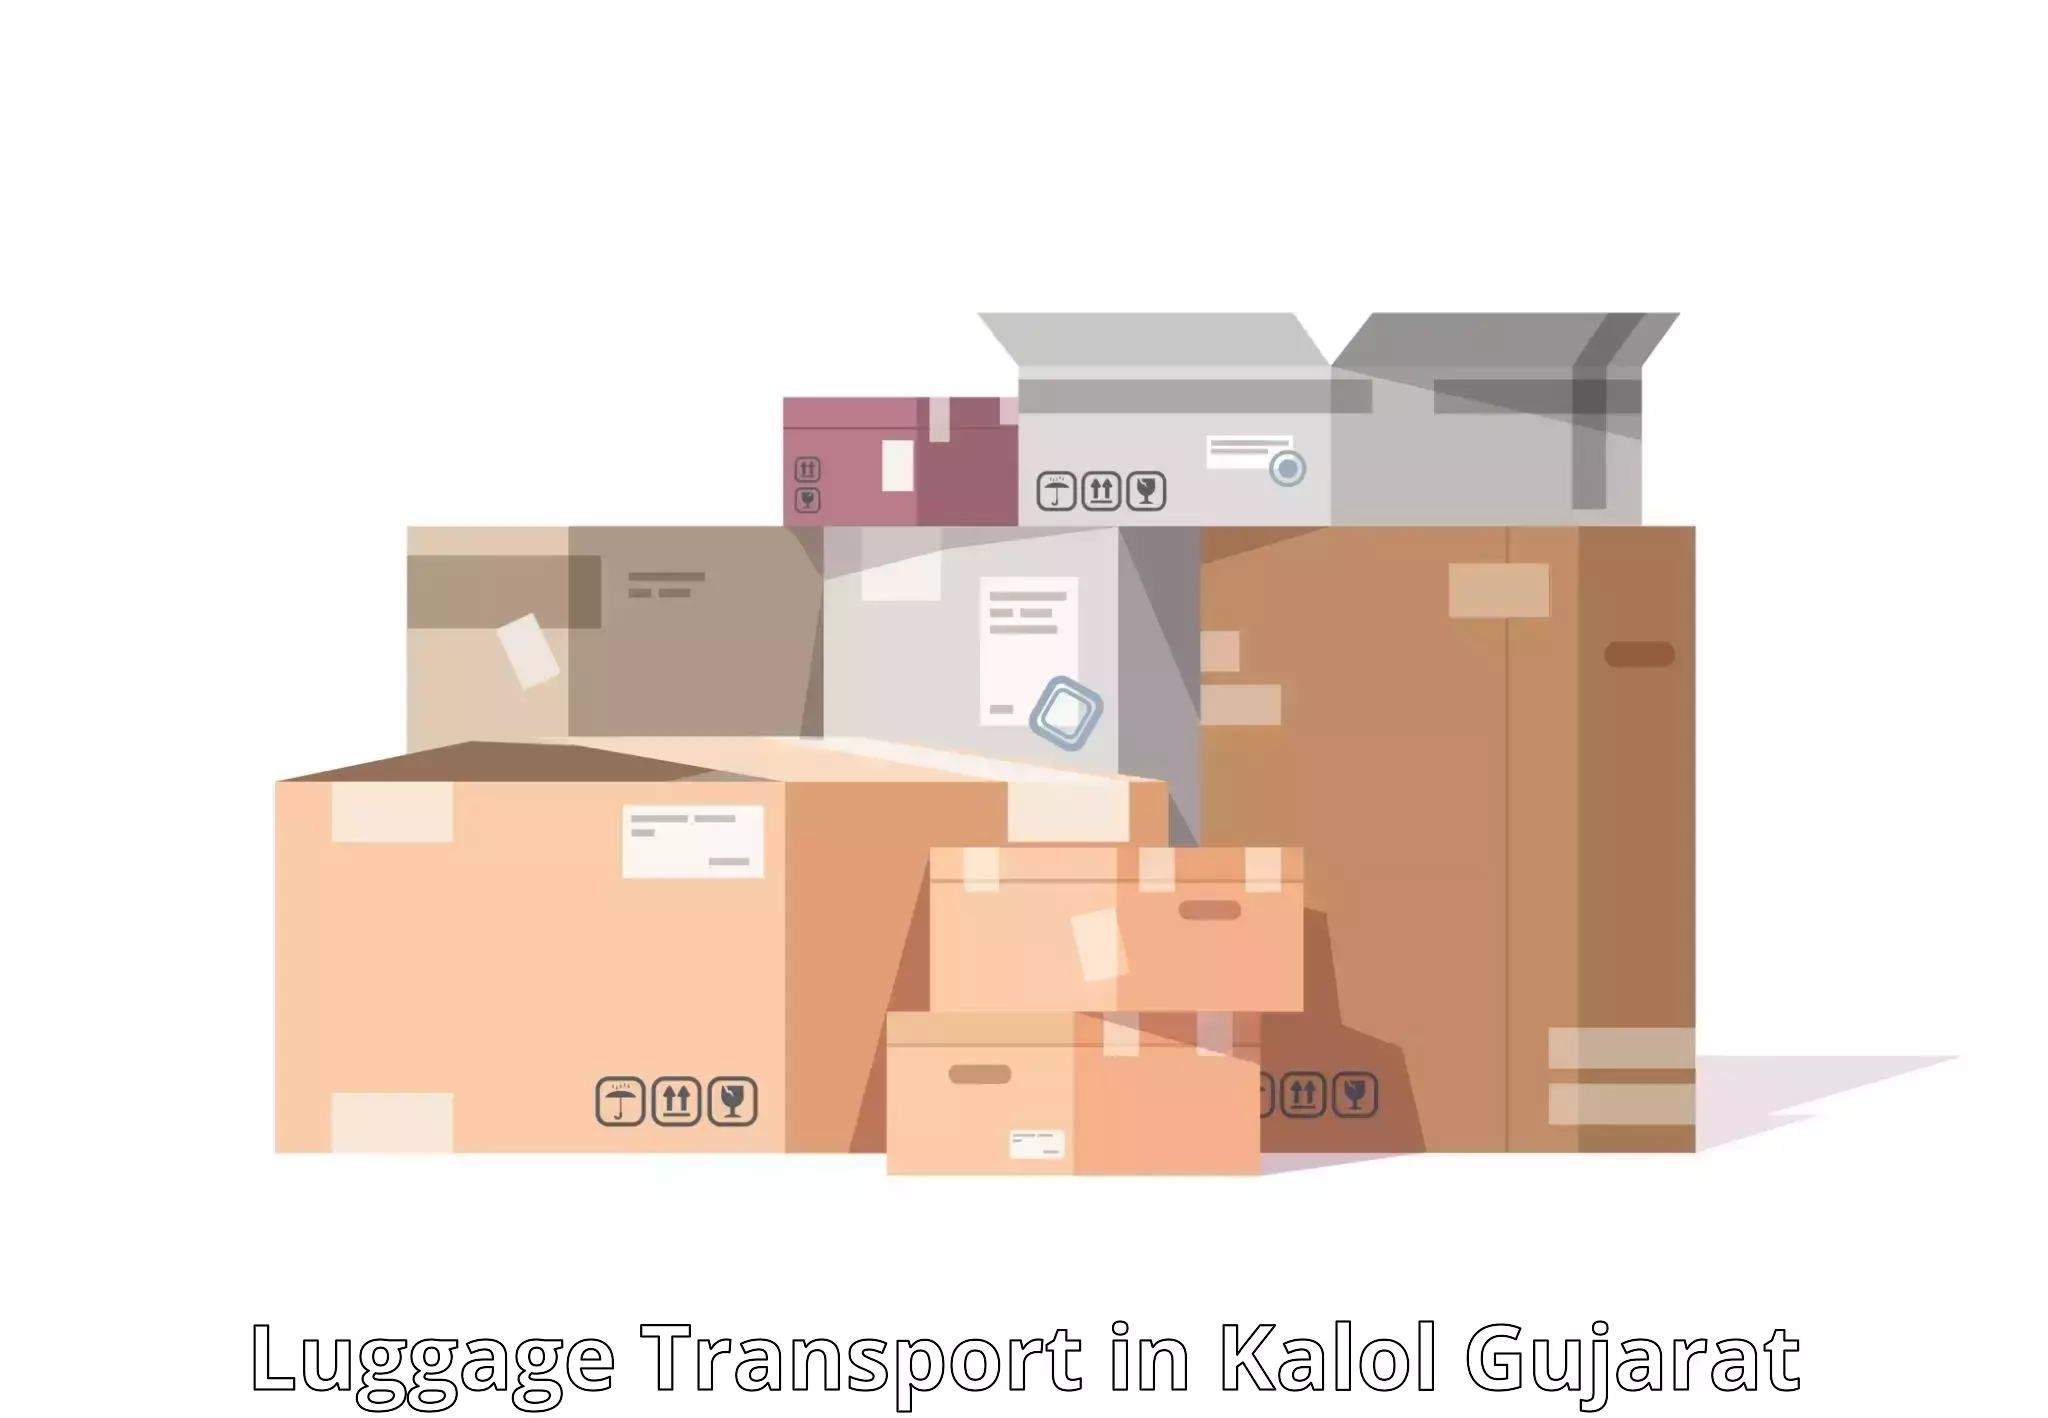 Luggage transit service in Kalol Gujarat